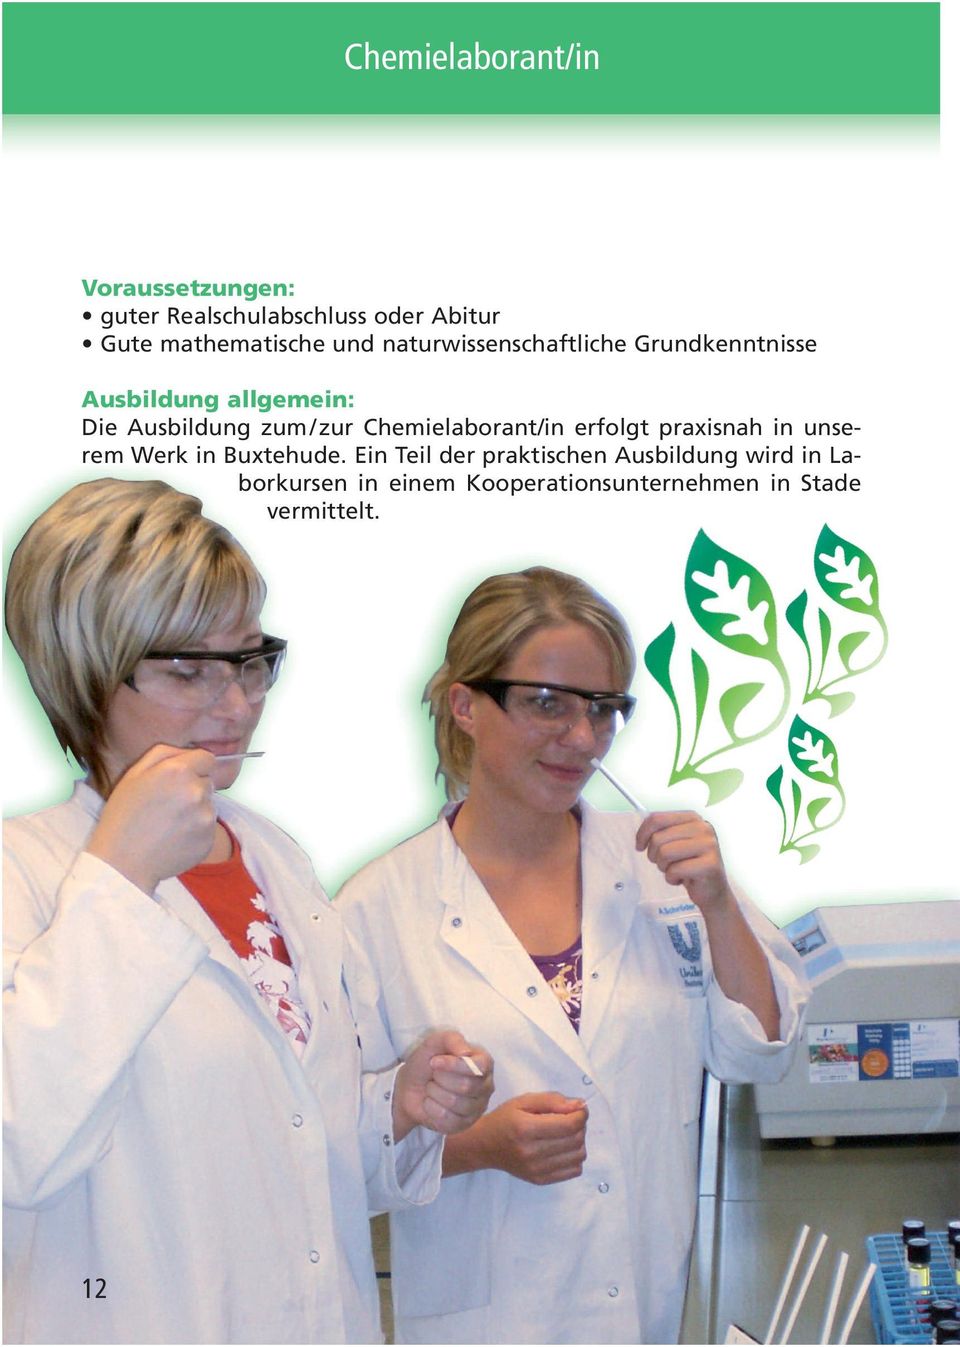 Ausbildung zum/ zur Chemielaborant/in erfolgt praxisnah in unserem Werk in Buxtehude.